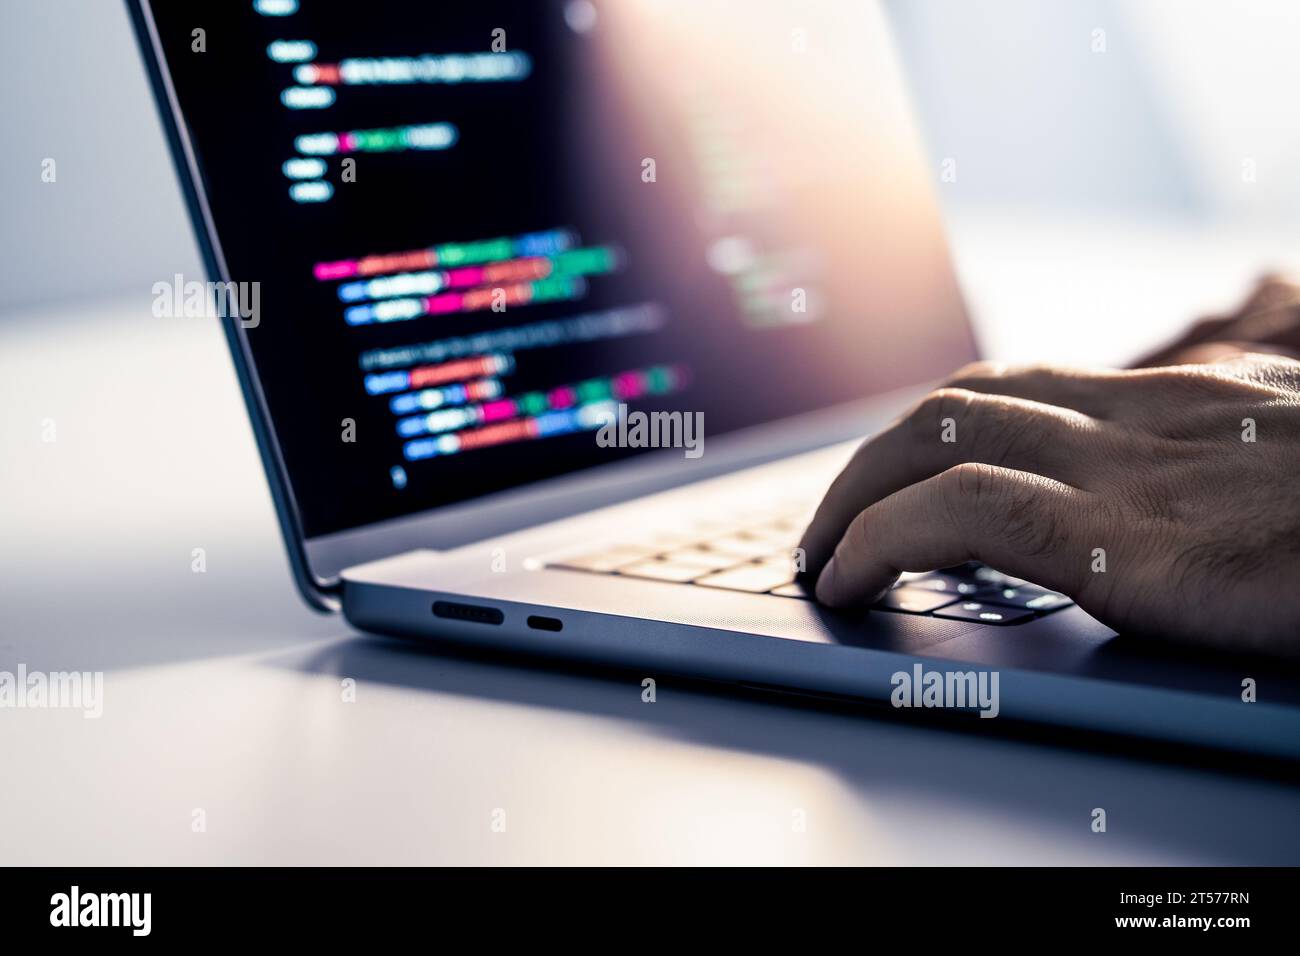 Hacker- und Malware-Computersoftware. Code der Betrugswebsite auf dem Bildschirm. Programmierer entwickelt Web-Sicherheit mit Laptop. Datenschutz-Hacking. Stockfoto